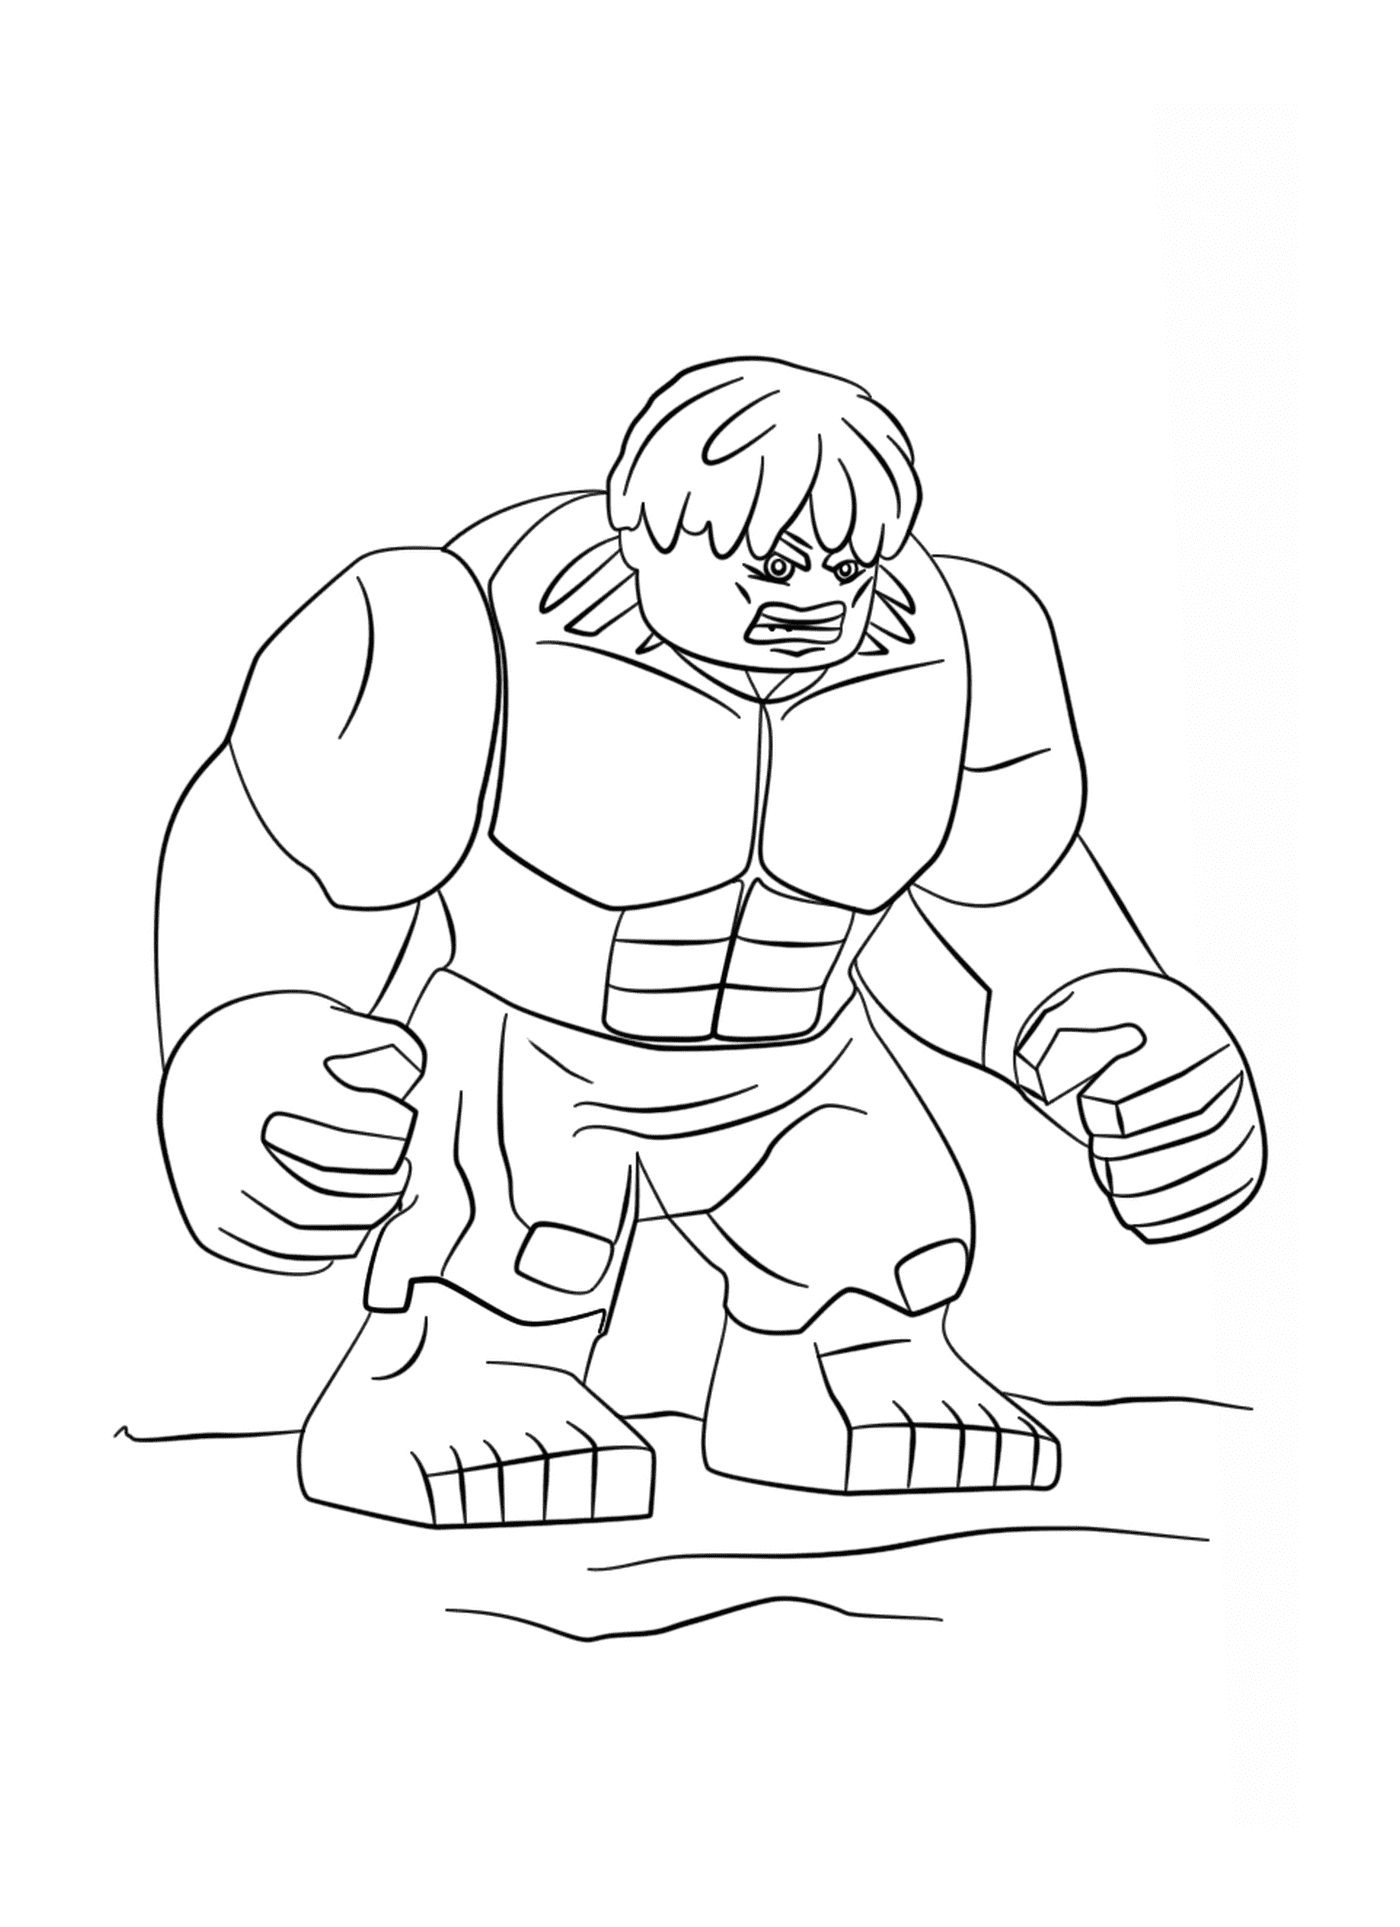  Hulk, l'imponente personaggio dei cartoni animati 